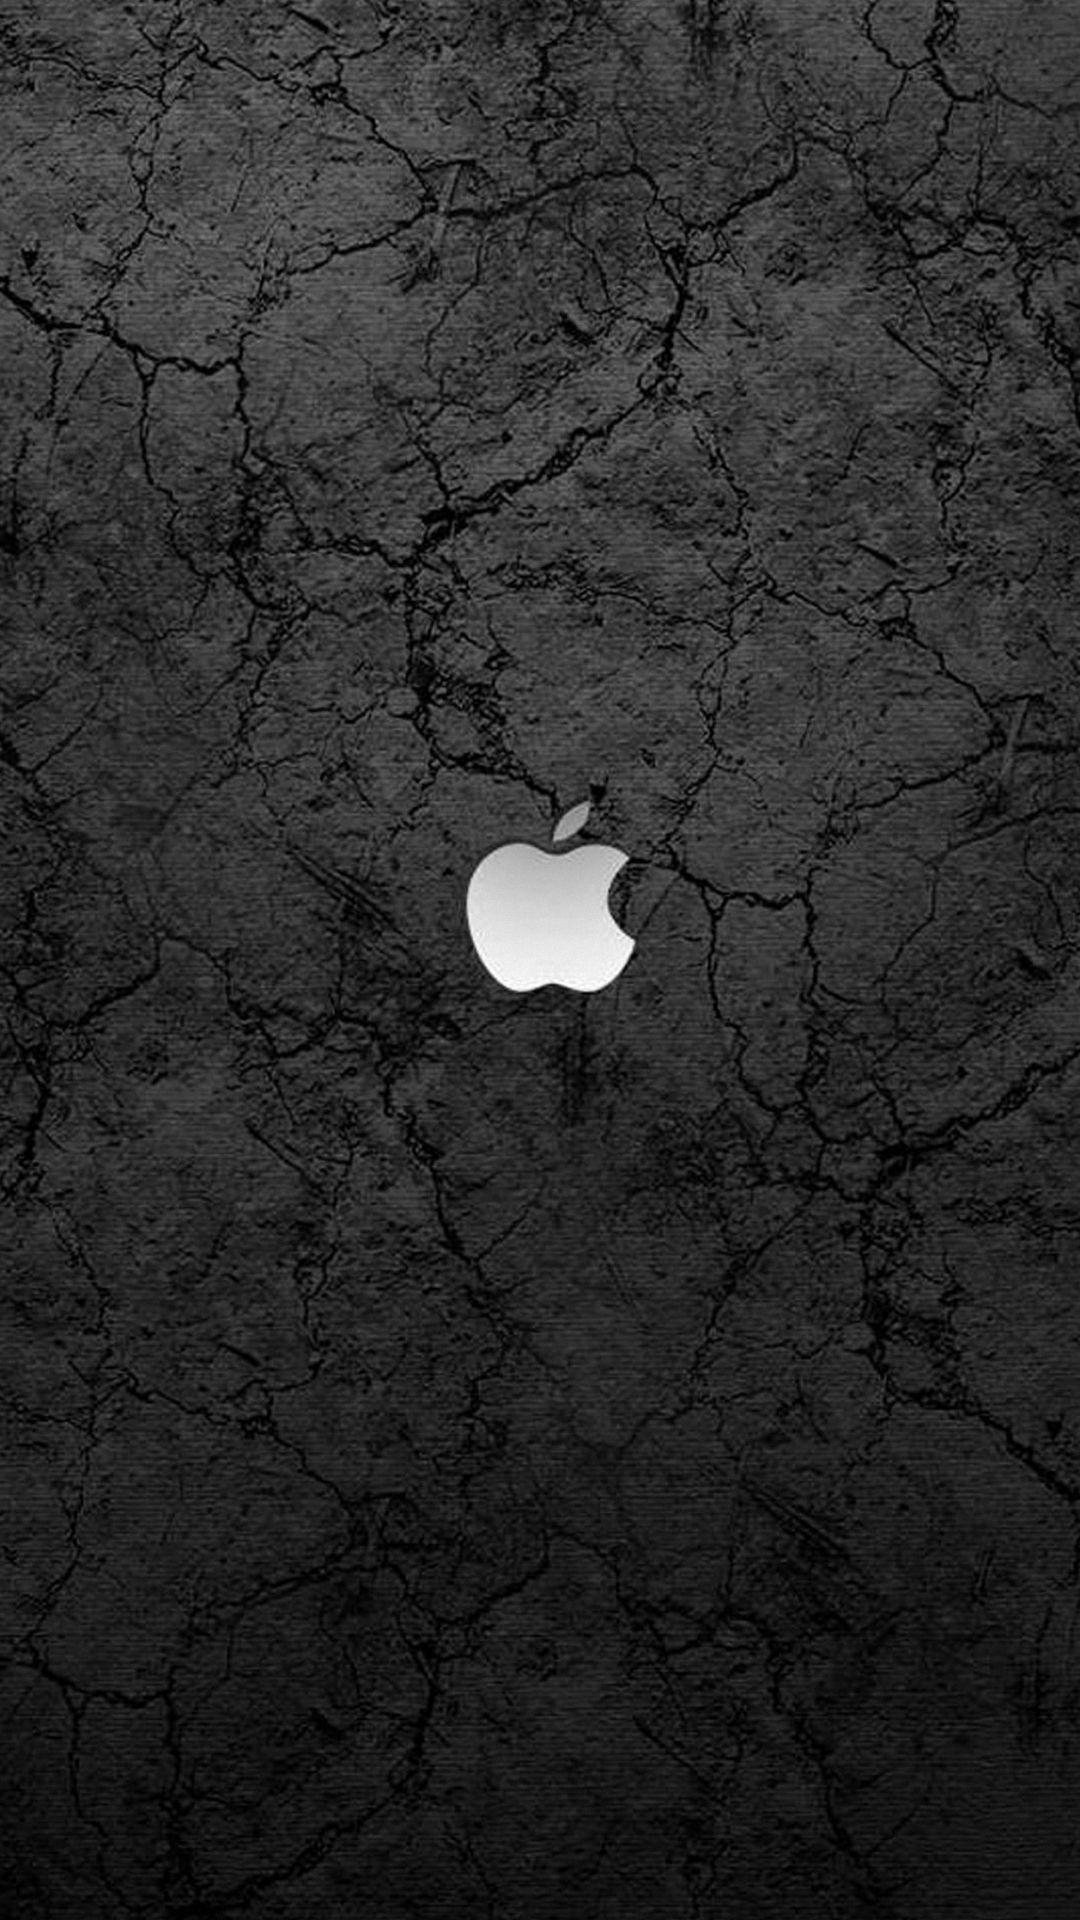 black white apple iphone 6 wallpaper HD. Apple Fever